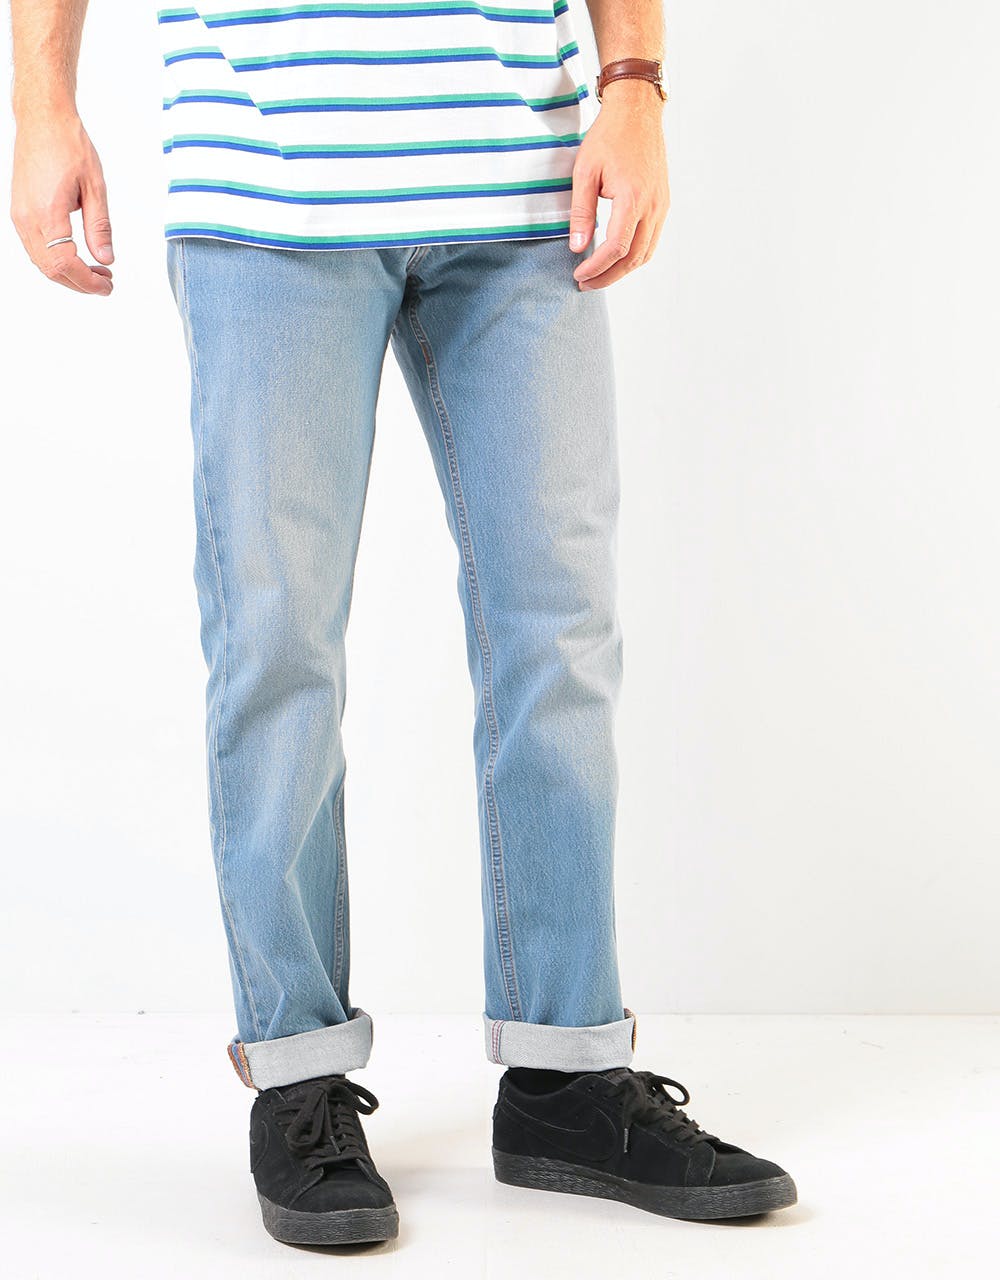 Levi's Skateboarding 511® Denim Jeans - Jumper